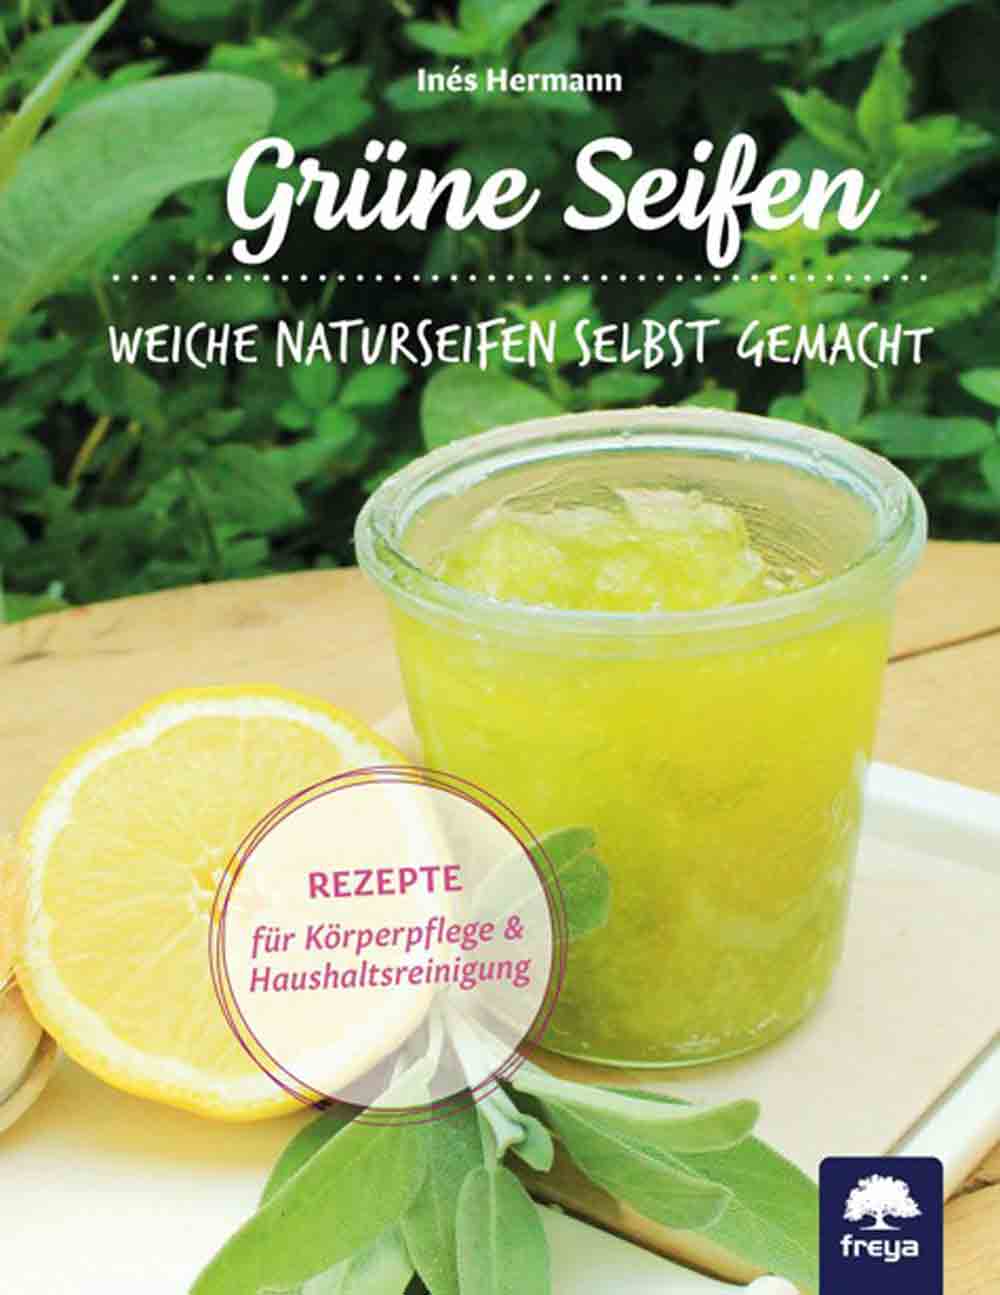 Anzeige: Lesetipps für Gütersloh: Inés Hermann, »Grüne Seifen«, jetzt bestellen!